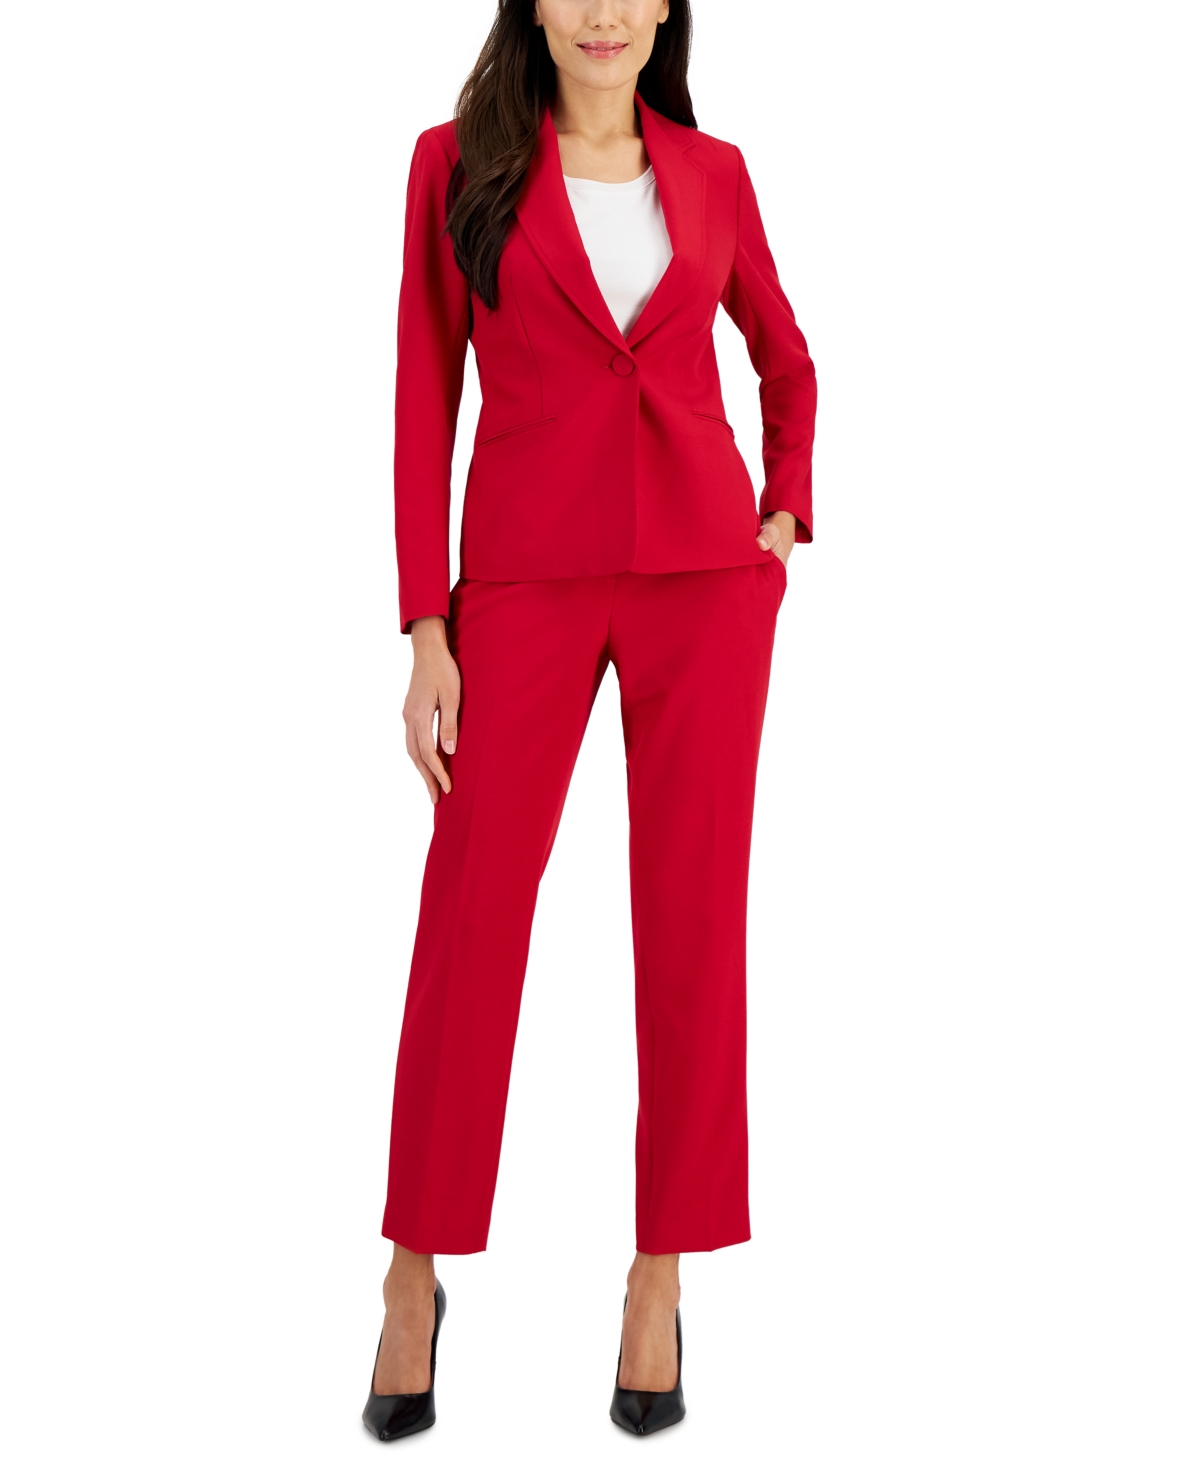 Le Suit Women's Crepe One-button Pantsuit, Regular & Petite Sizes In Cherry